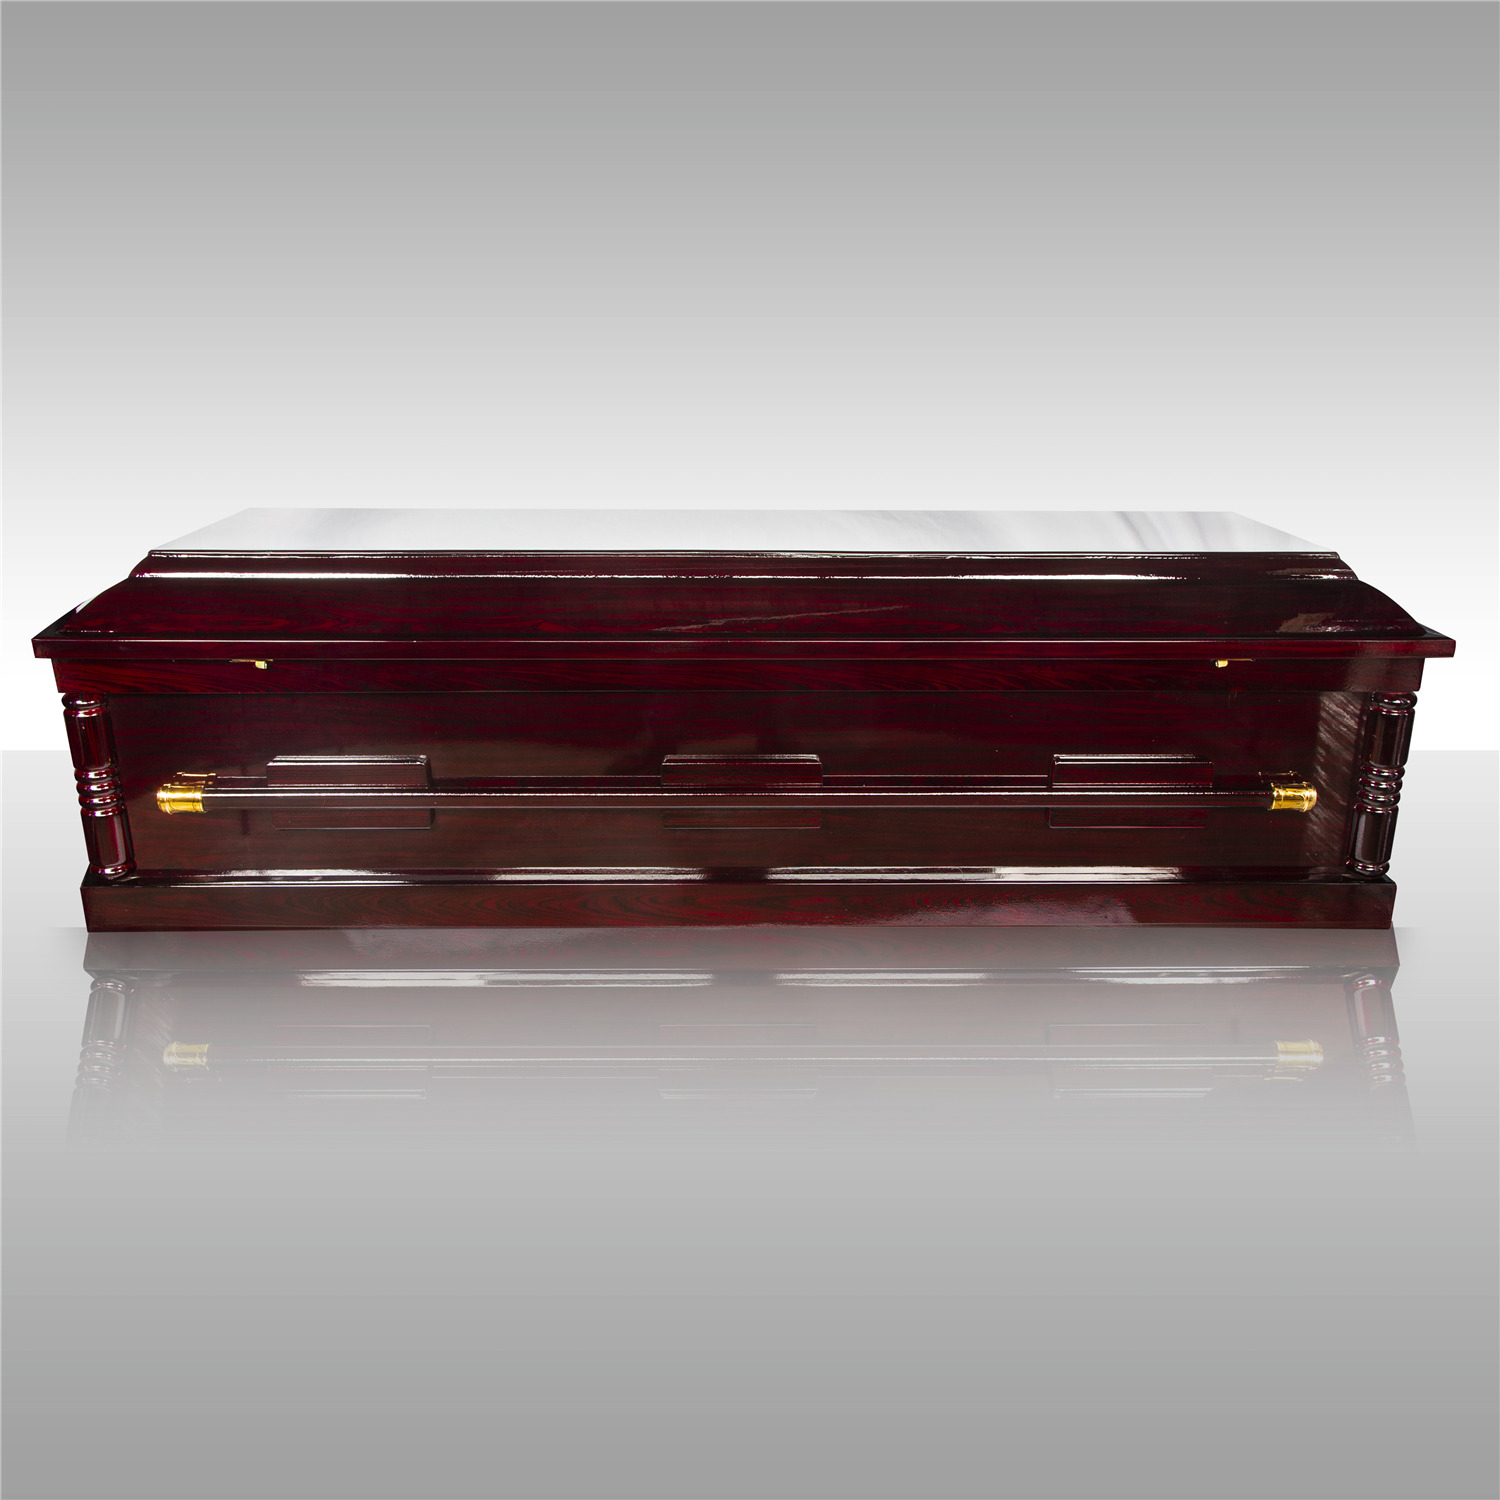 棺木-2呎環保火葬棺(紅)-北北基桃